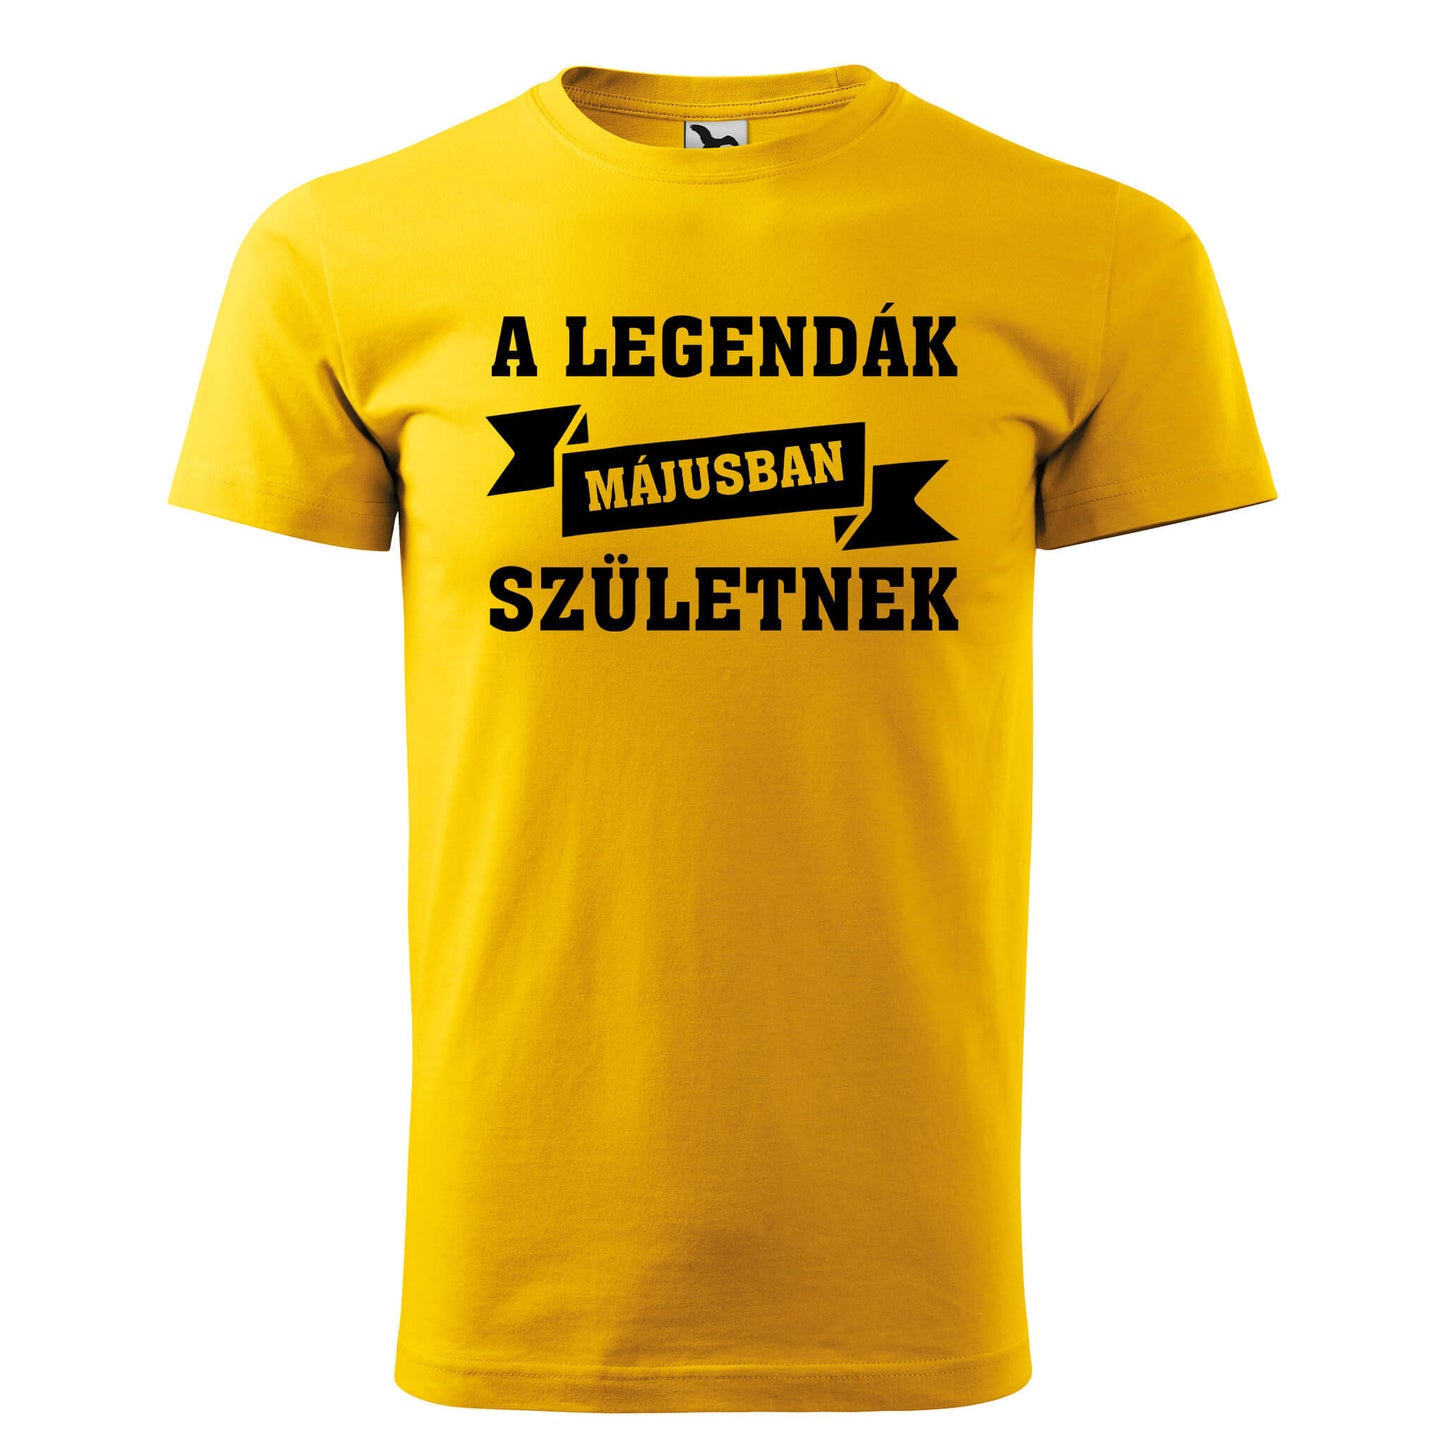 T-shirt - A legendák májusban születnek - Customizable - rvdesignprint